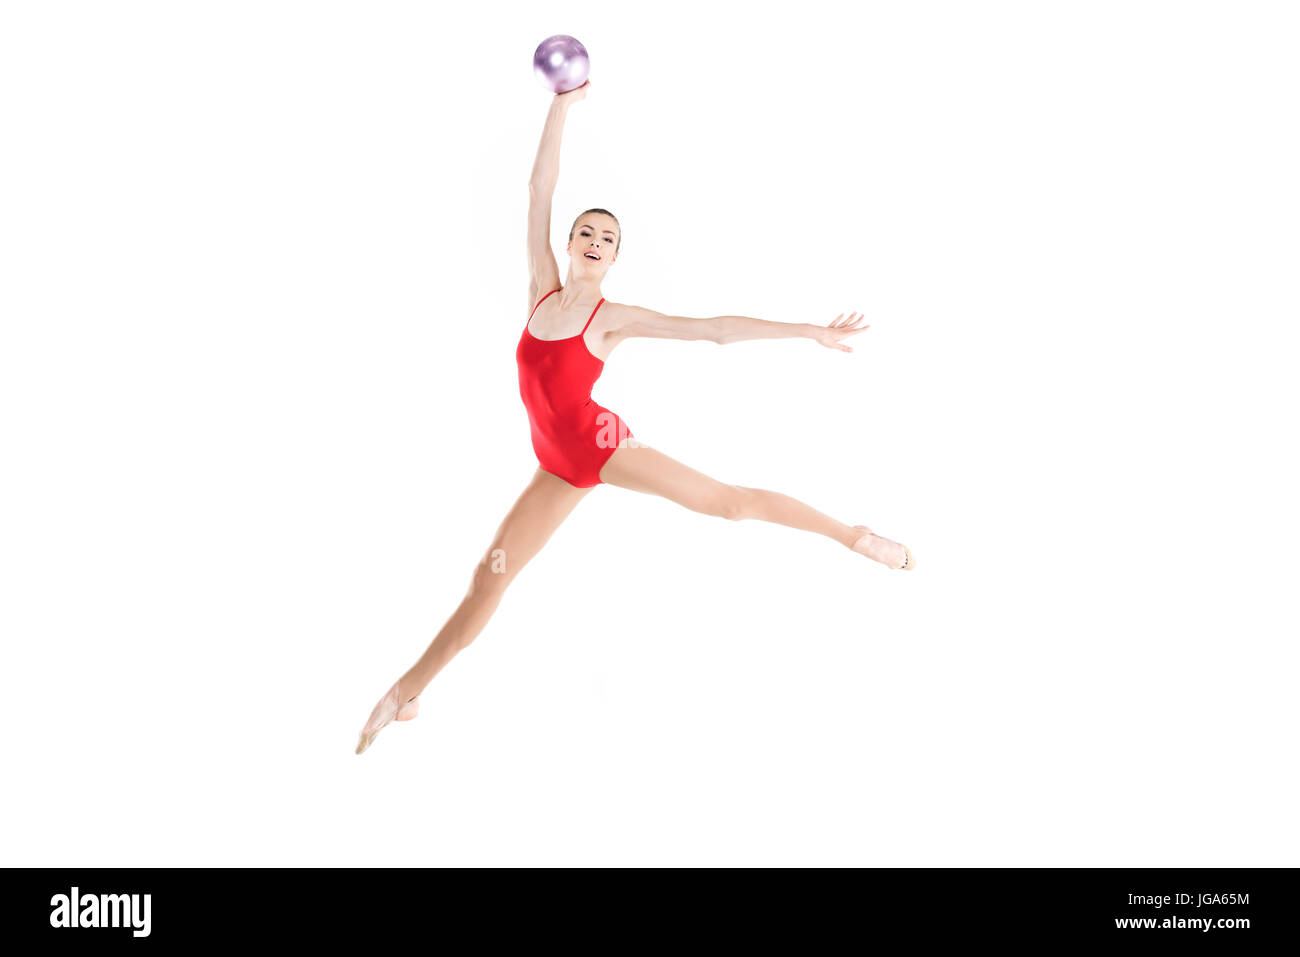 Giovane donna caucasica ginnasta ritmica jumping con sfera Foto Stock